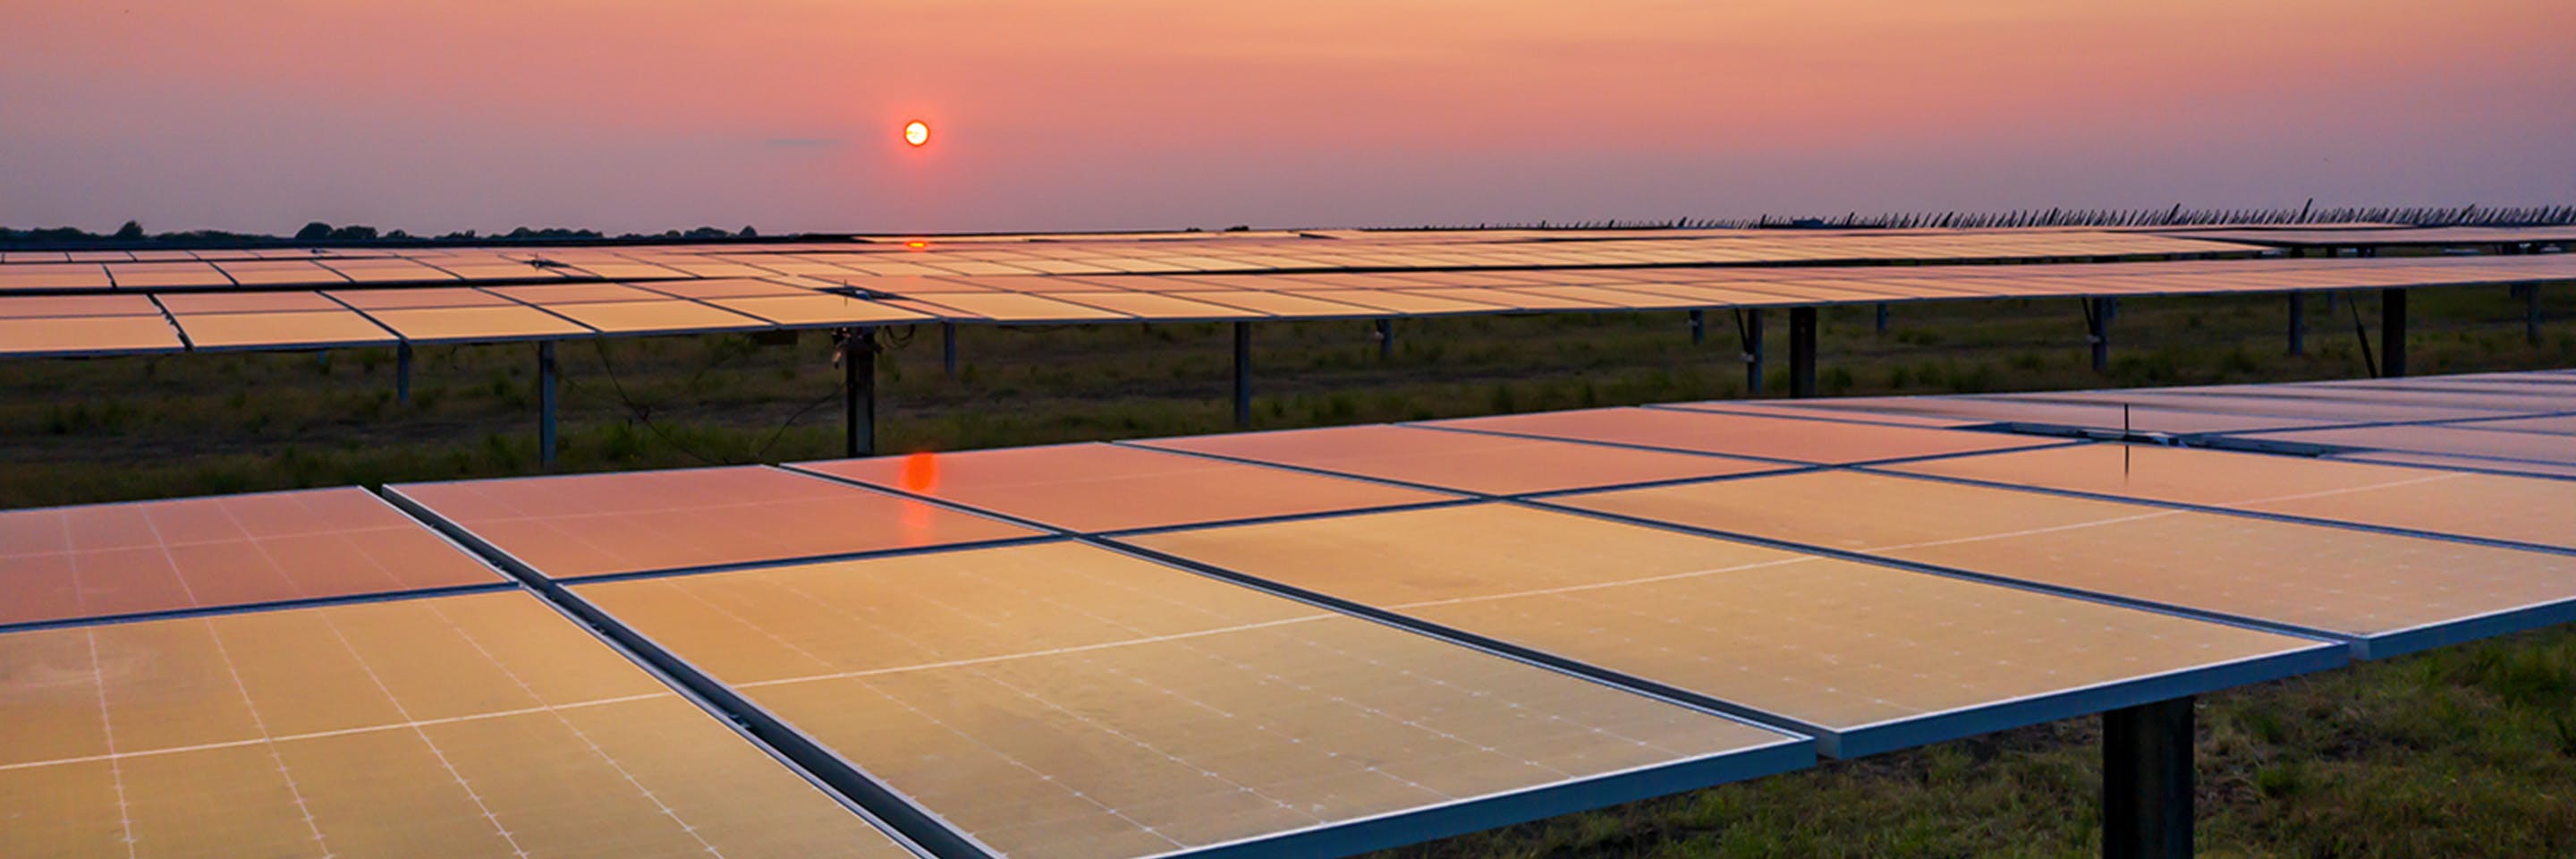 Une des plus grandes installations d’énergie solaire aux États-Unis répondra aux objectifs de développement durable des partenaires du projet, allant d’une université à des entreprises du classement Fortune 100.